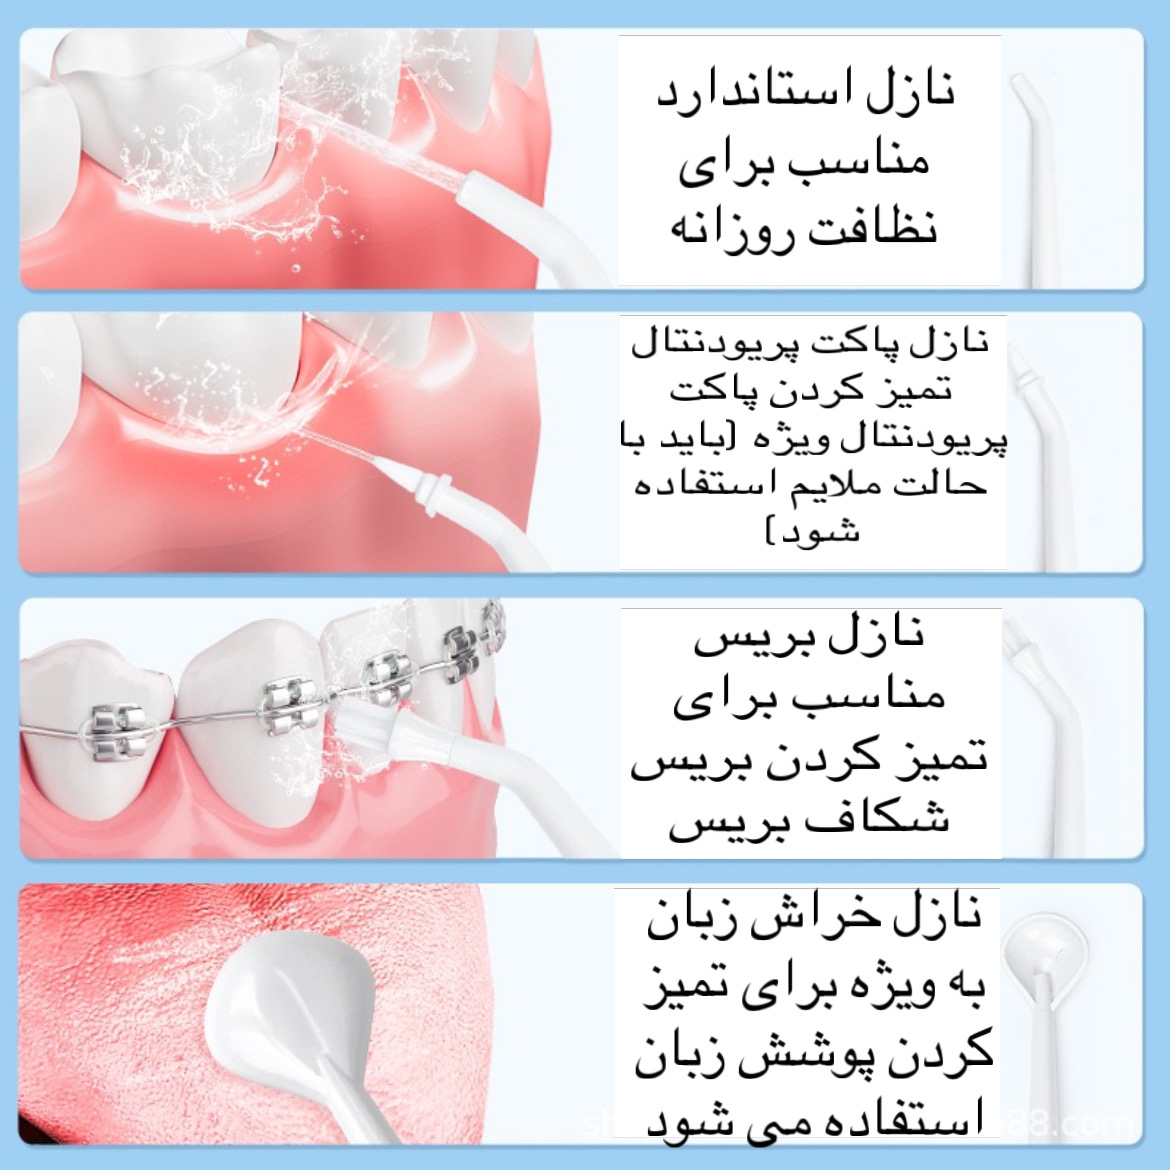 دستگاه شست و شوی دهان و دندان مدل Oral Irrigator-AOW03